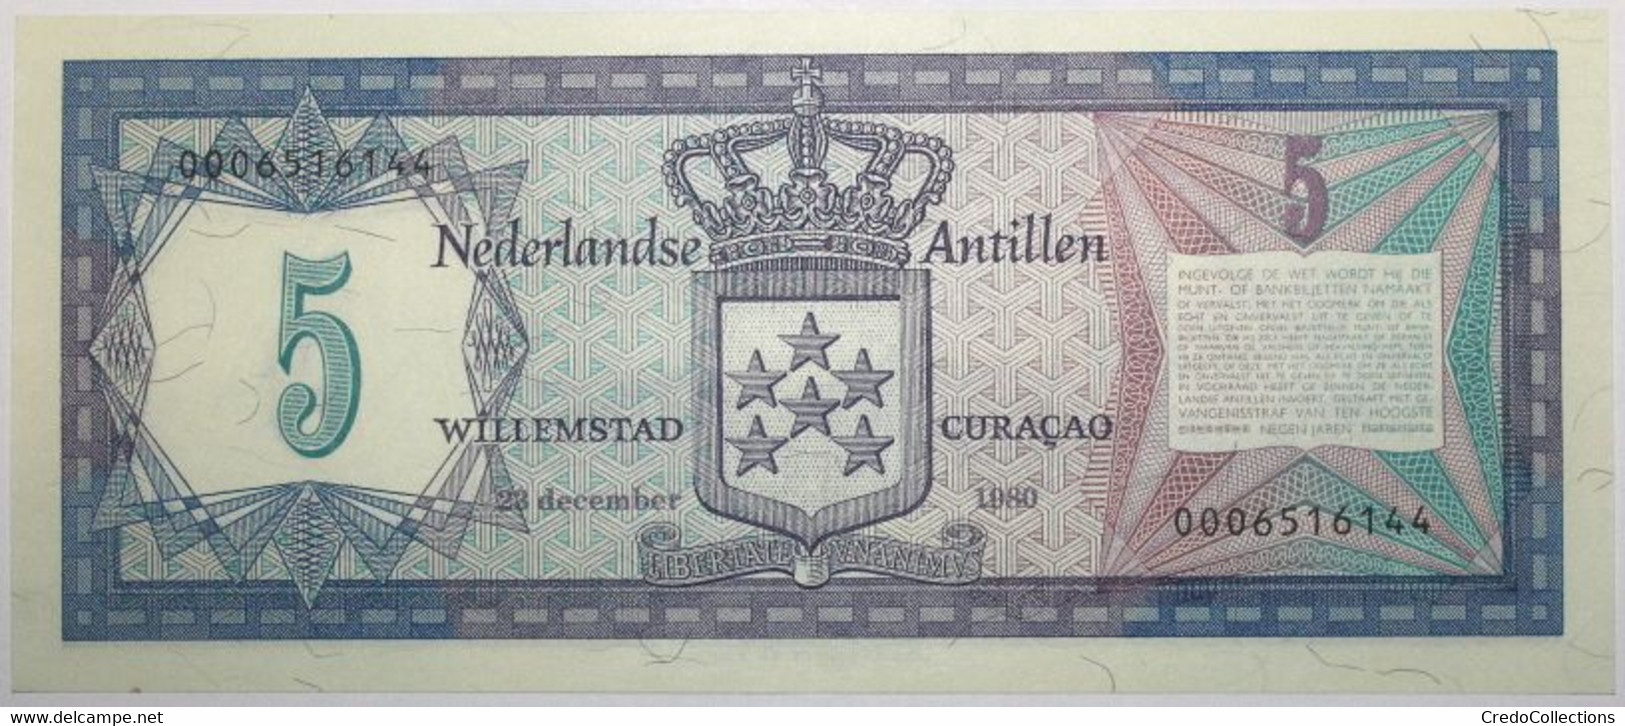 Antilles Néerlandaises - 5 Gulden - 1980 - PICK 15a - SPL - Netherlands Antilles (...-1986)